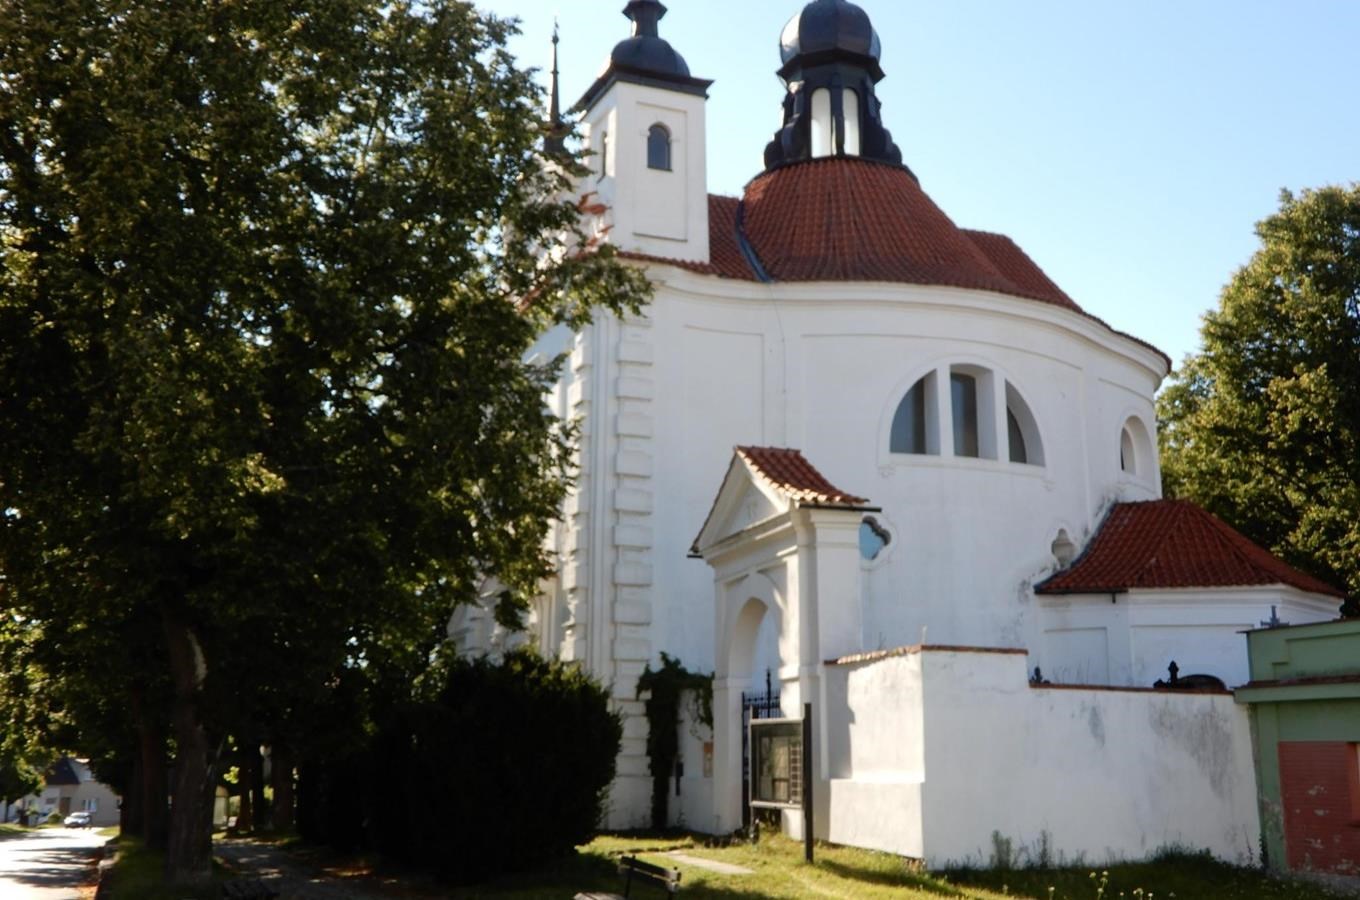 Kostel sv. Michaela a starý městský hřbitov v Bechyni